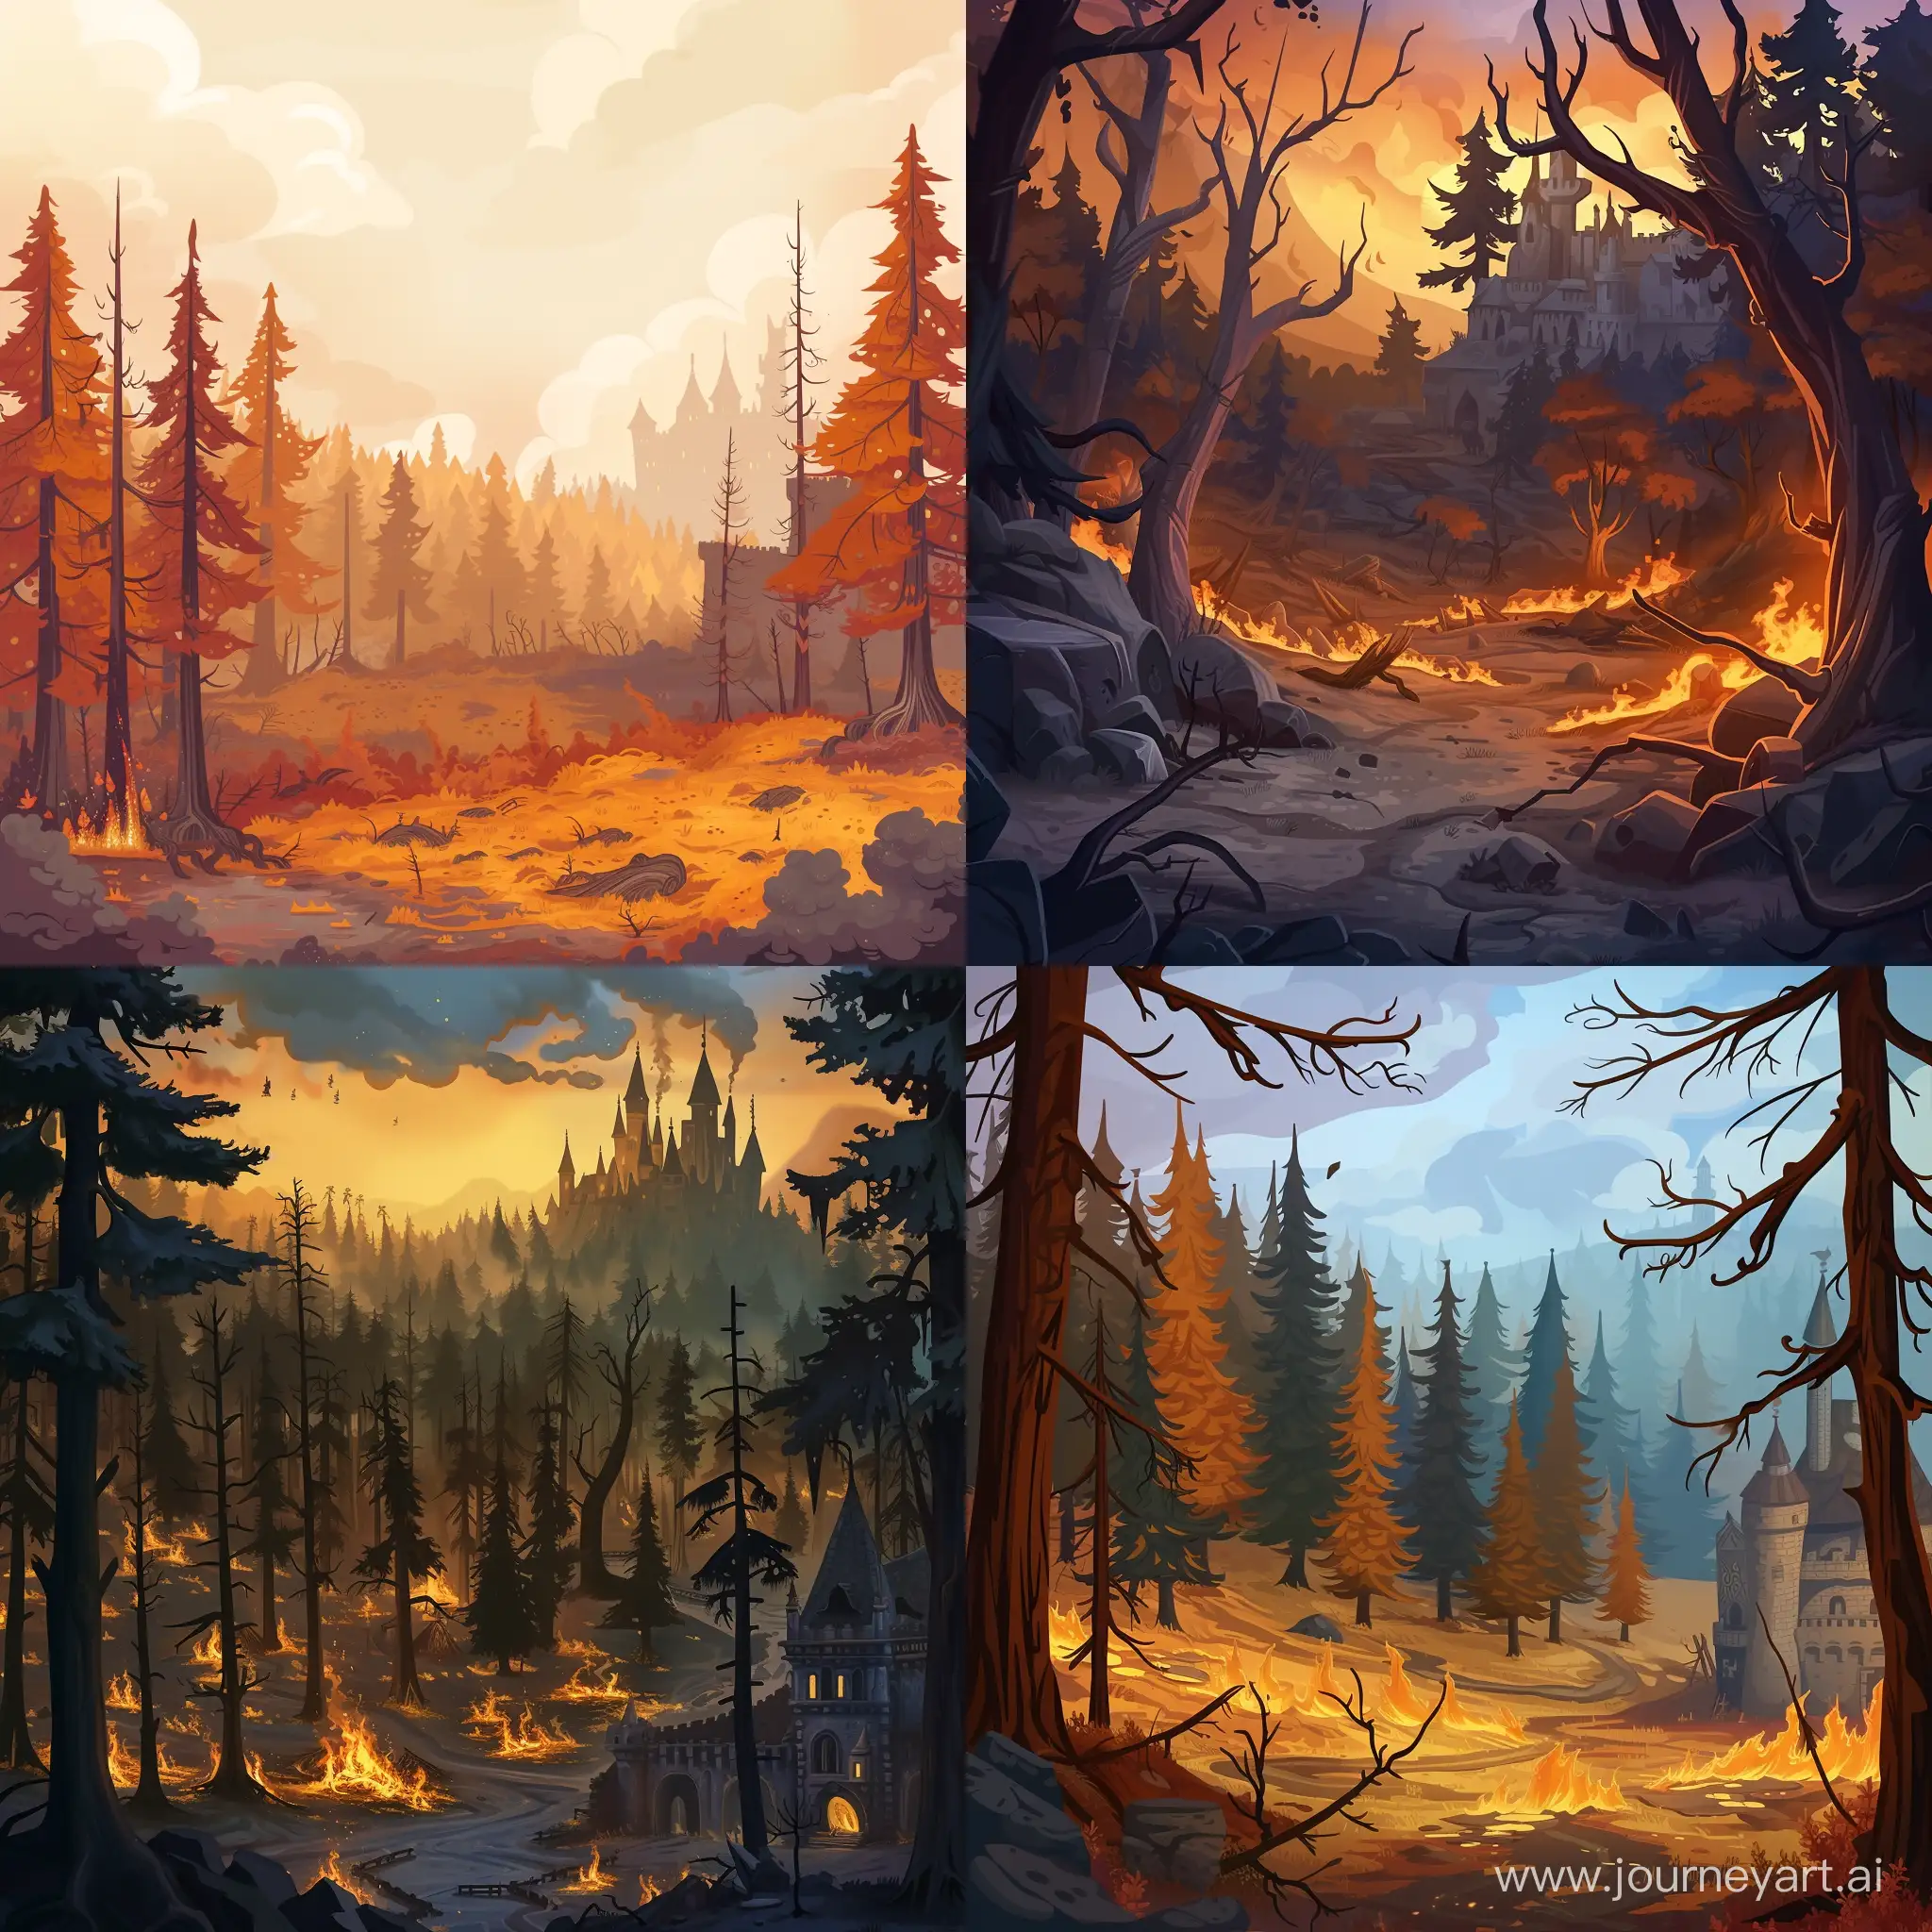 Нарисуй задник для мобильной казуальной игры, на картинке должен быть выгоревший лес, в правом нижнем углу должен быть замок